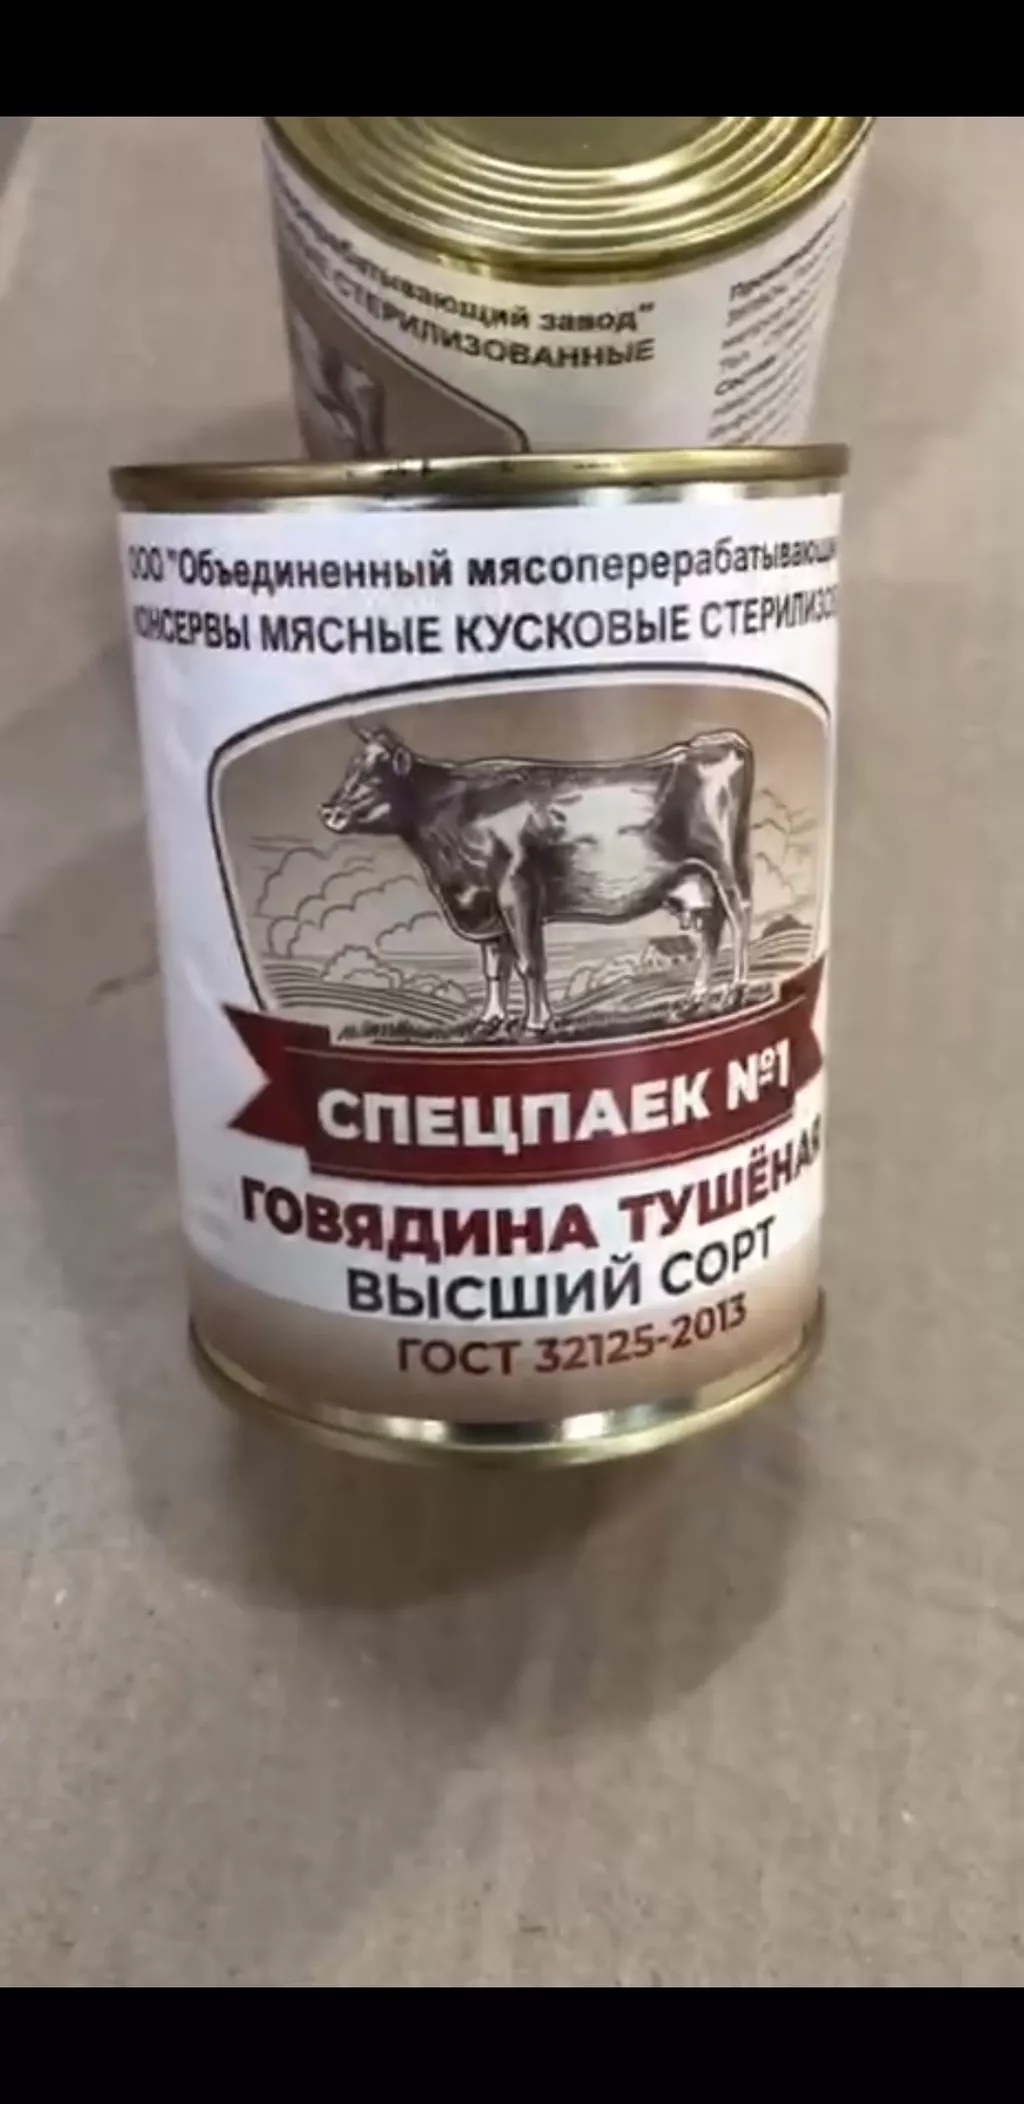 тушёнка из говядины  в Москве и Московской области